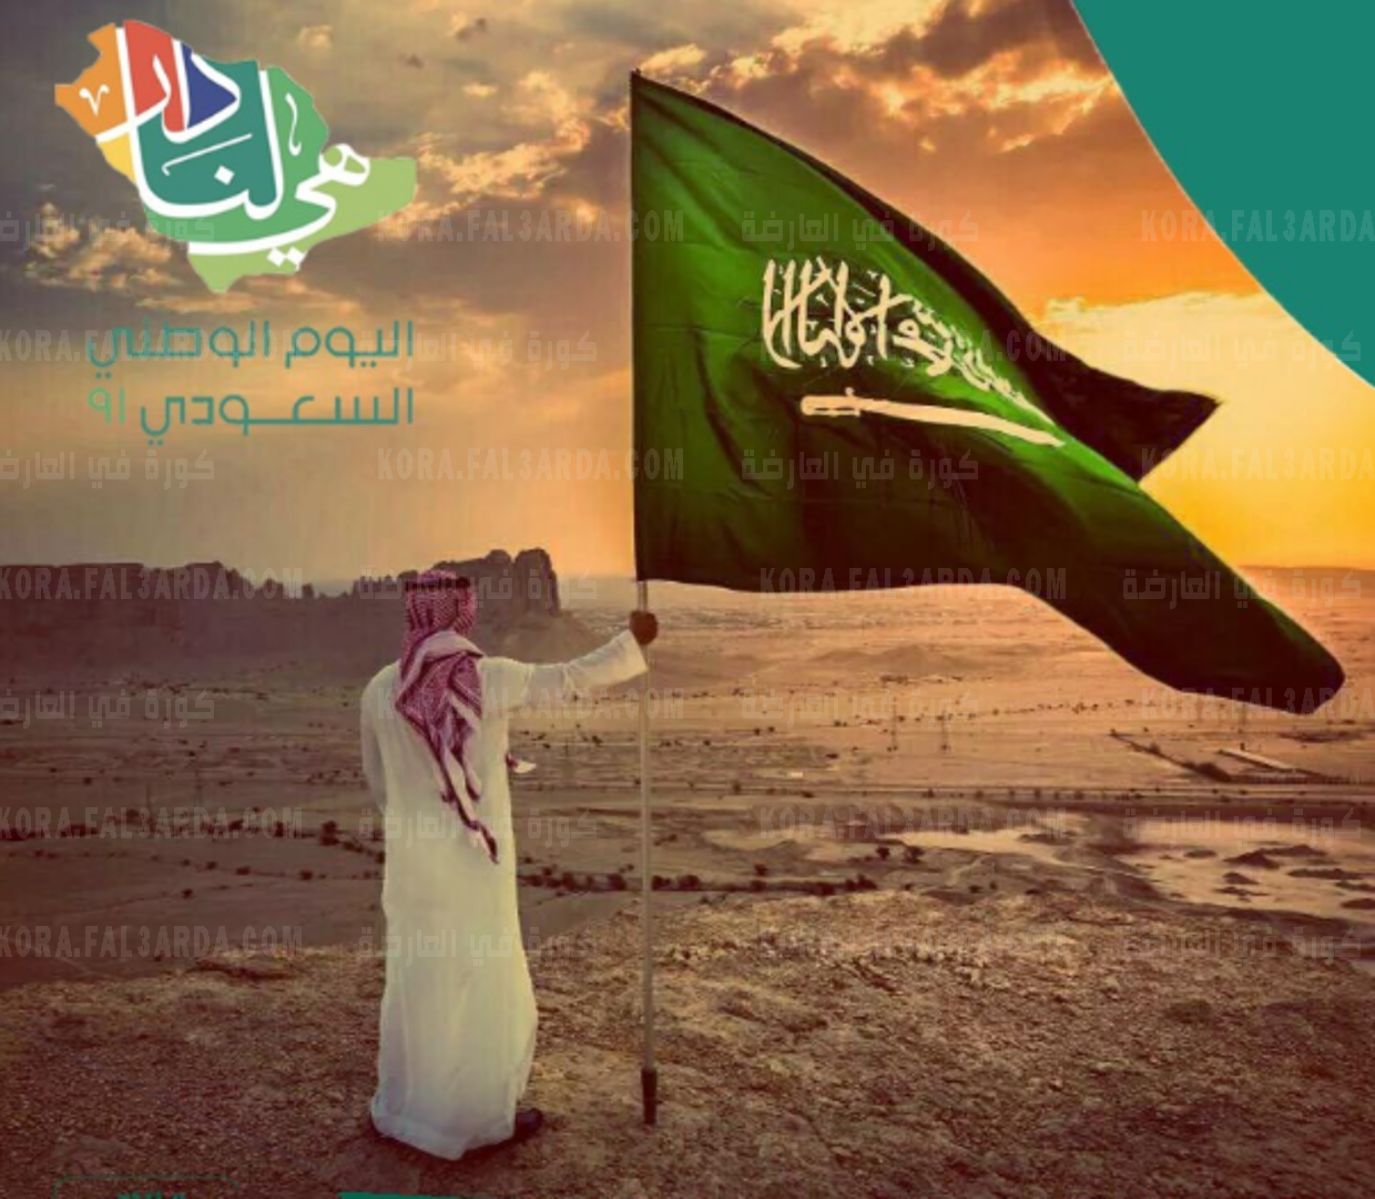 عبارات عن اليوم الوطني السعودي 91 بالصور ومكتوبة